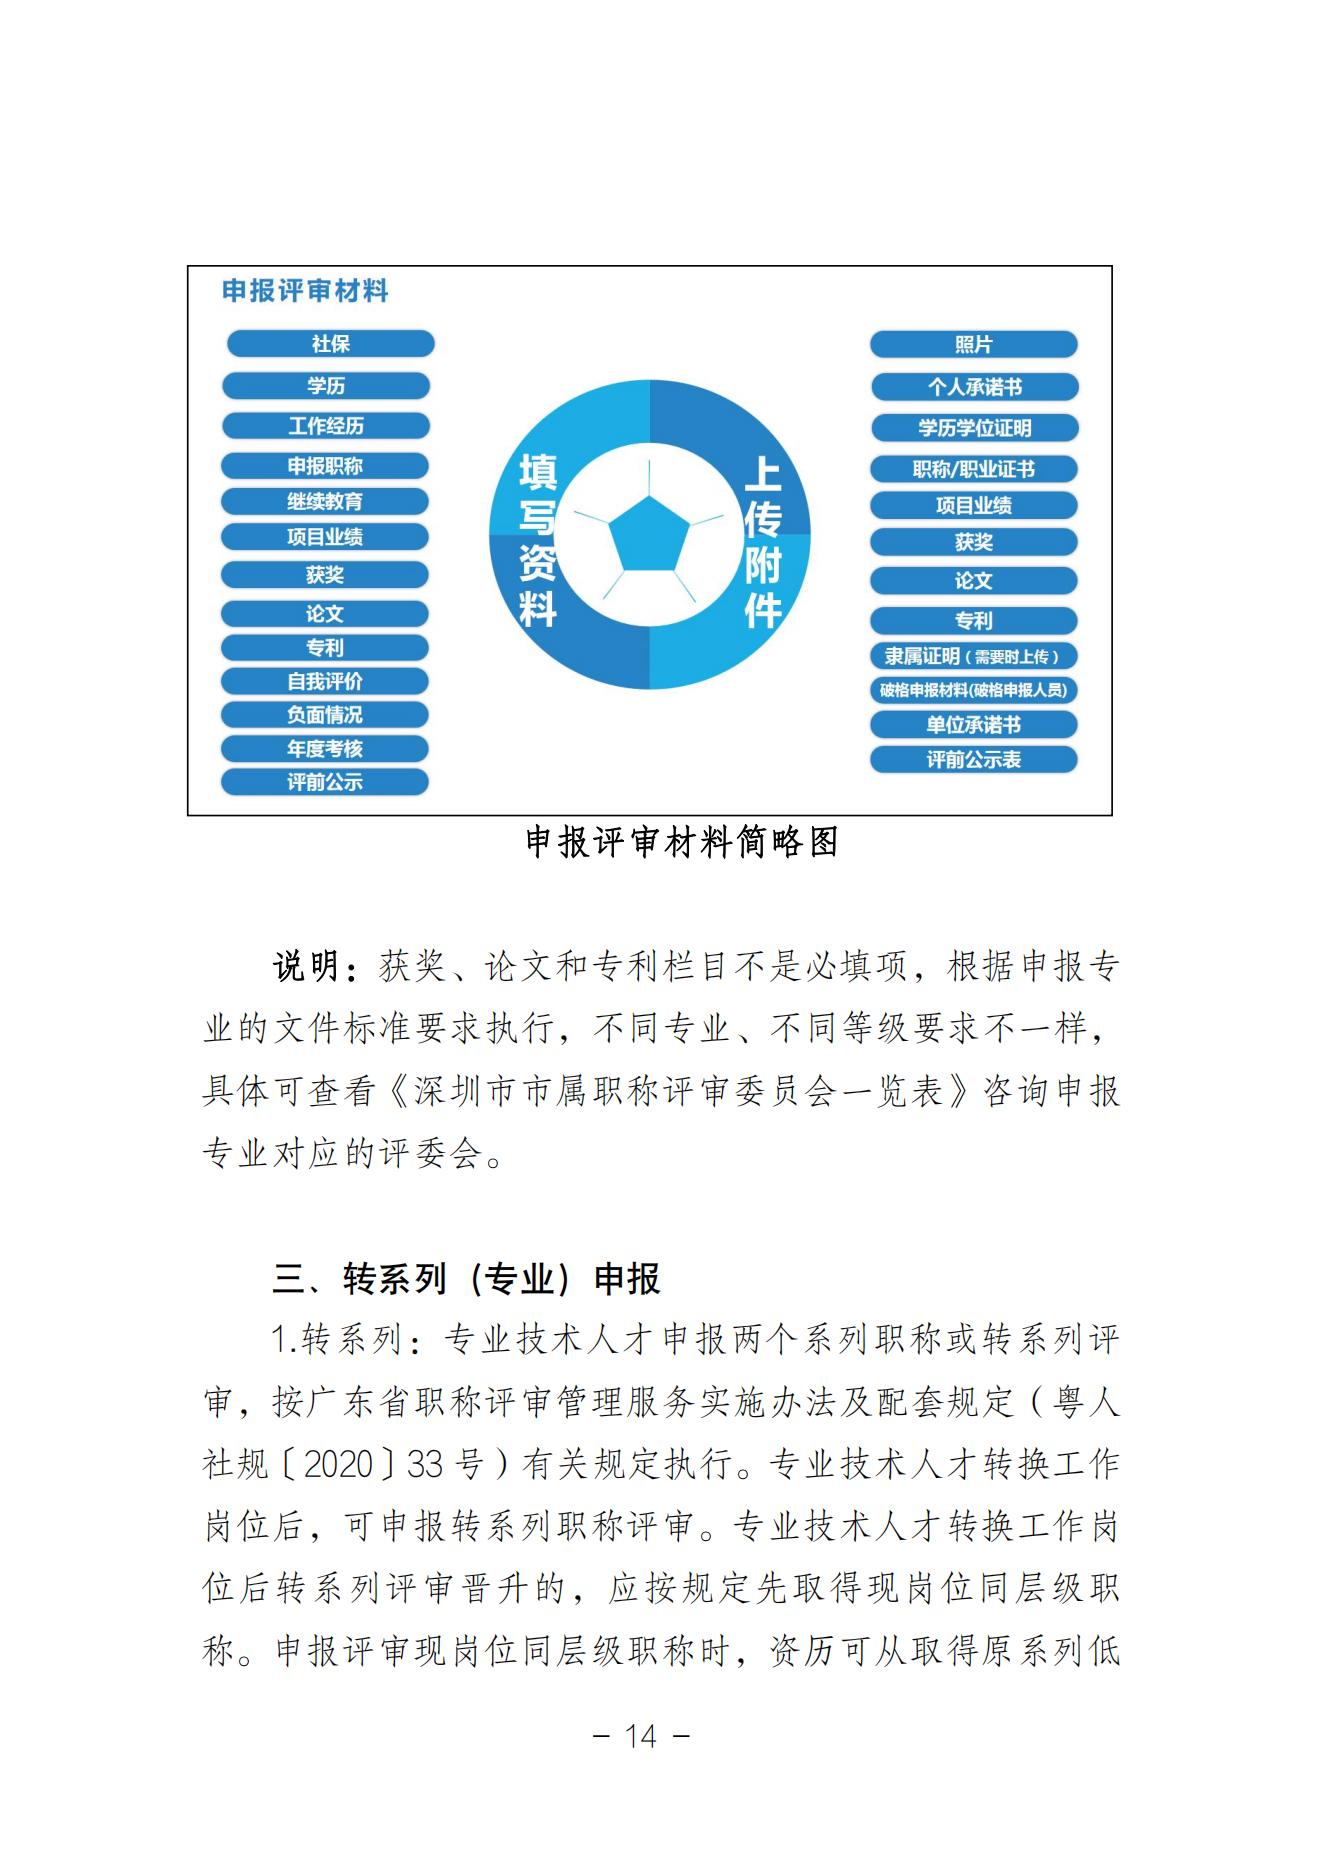 附件3、深圳市职称评审申报指南（2023年度）_13.jpg